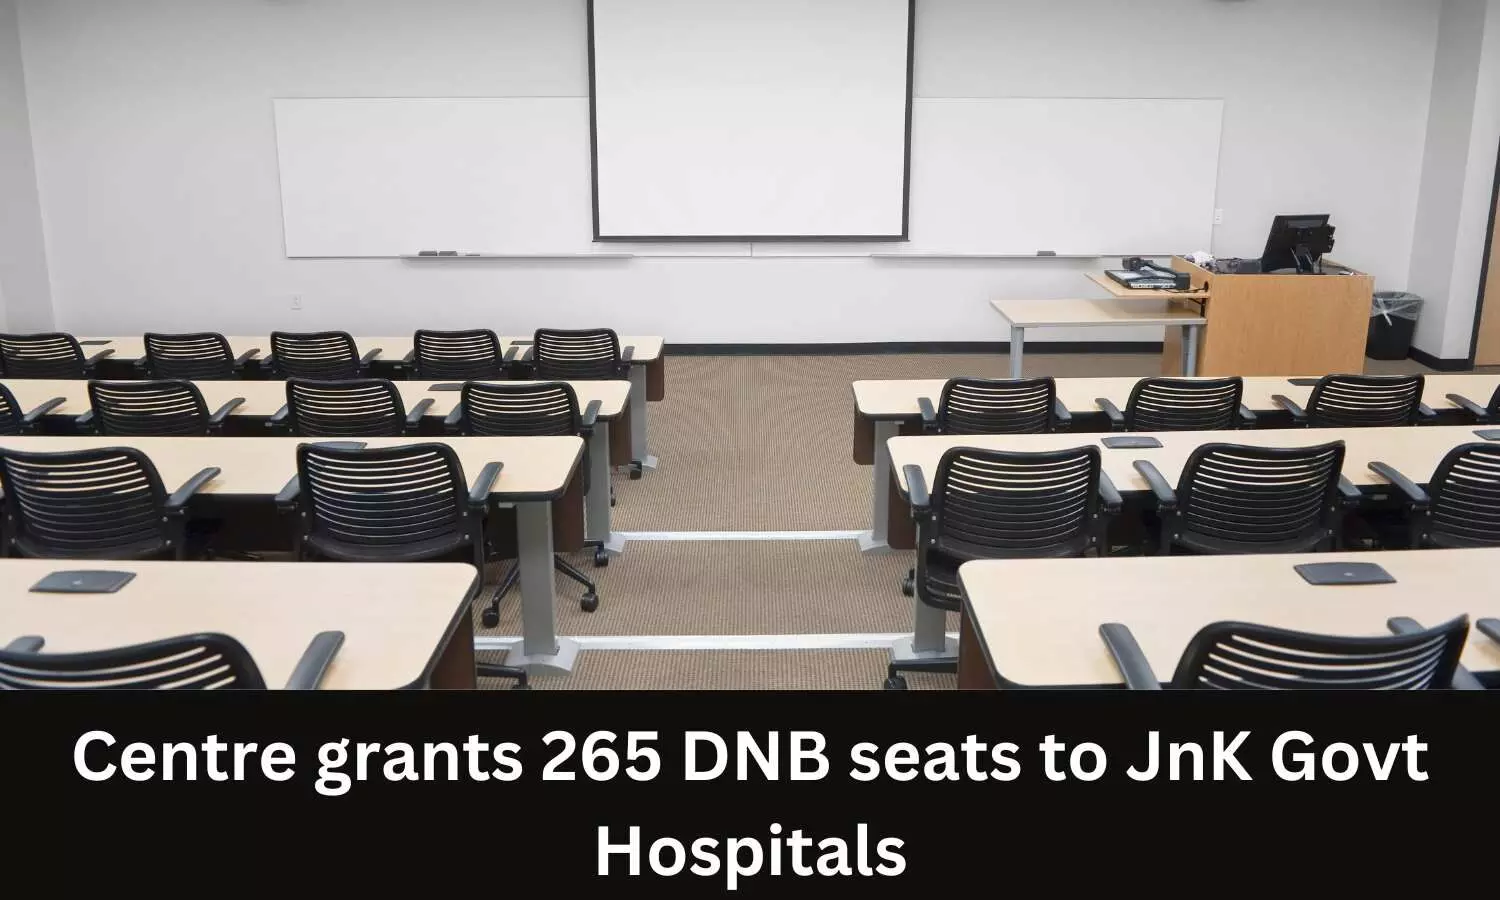 Centre grants 265 DNB seats to Govt hospitals in JnK